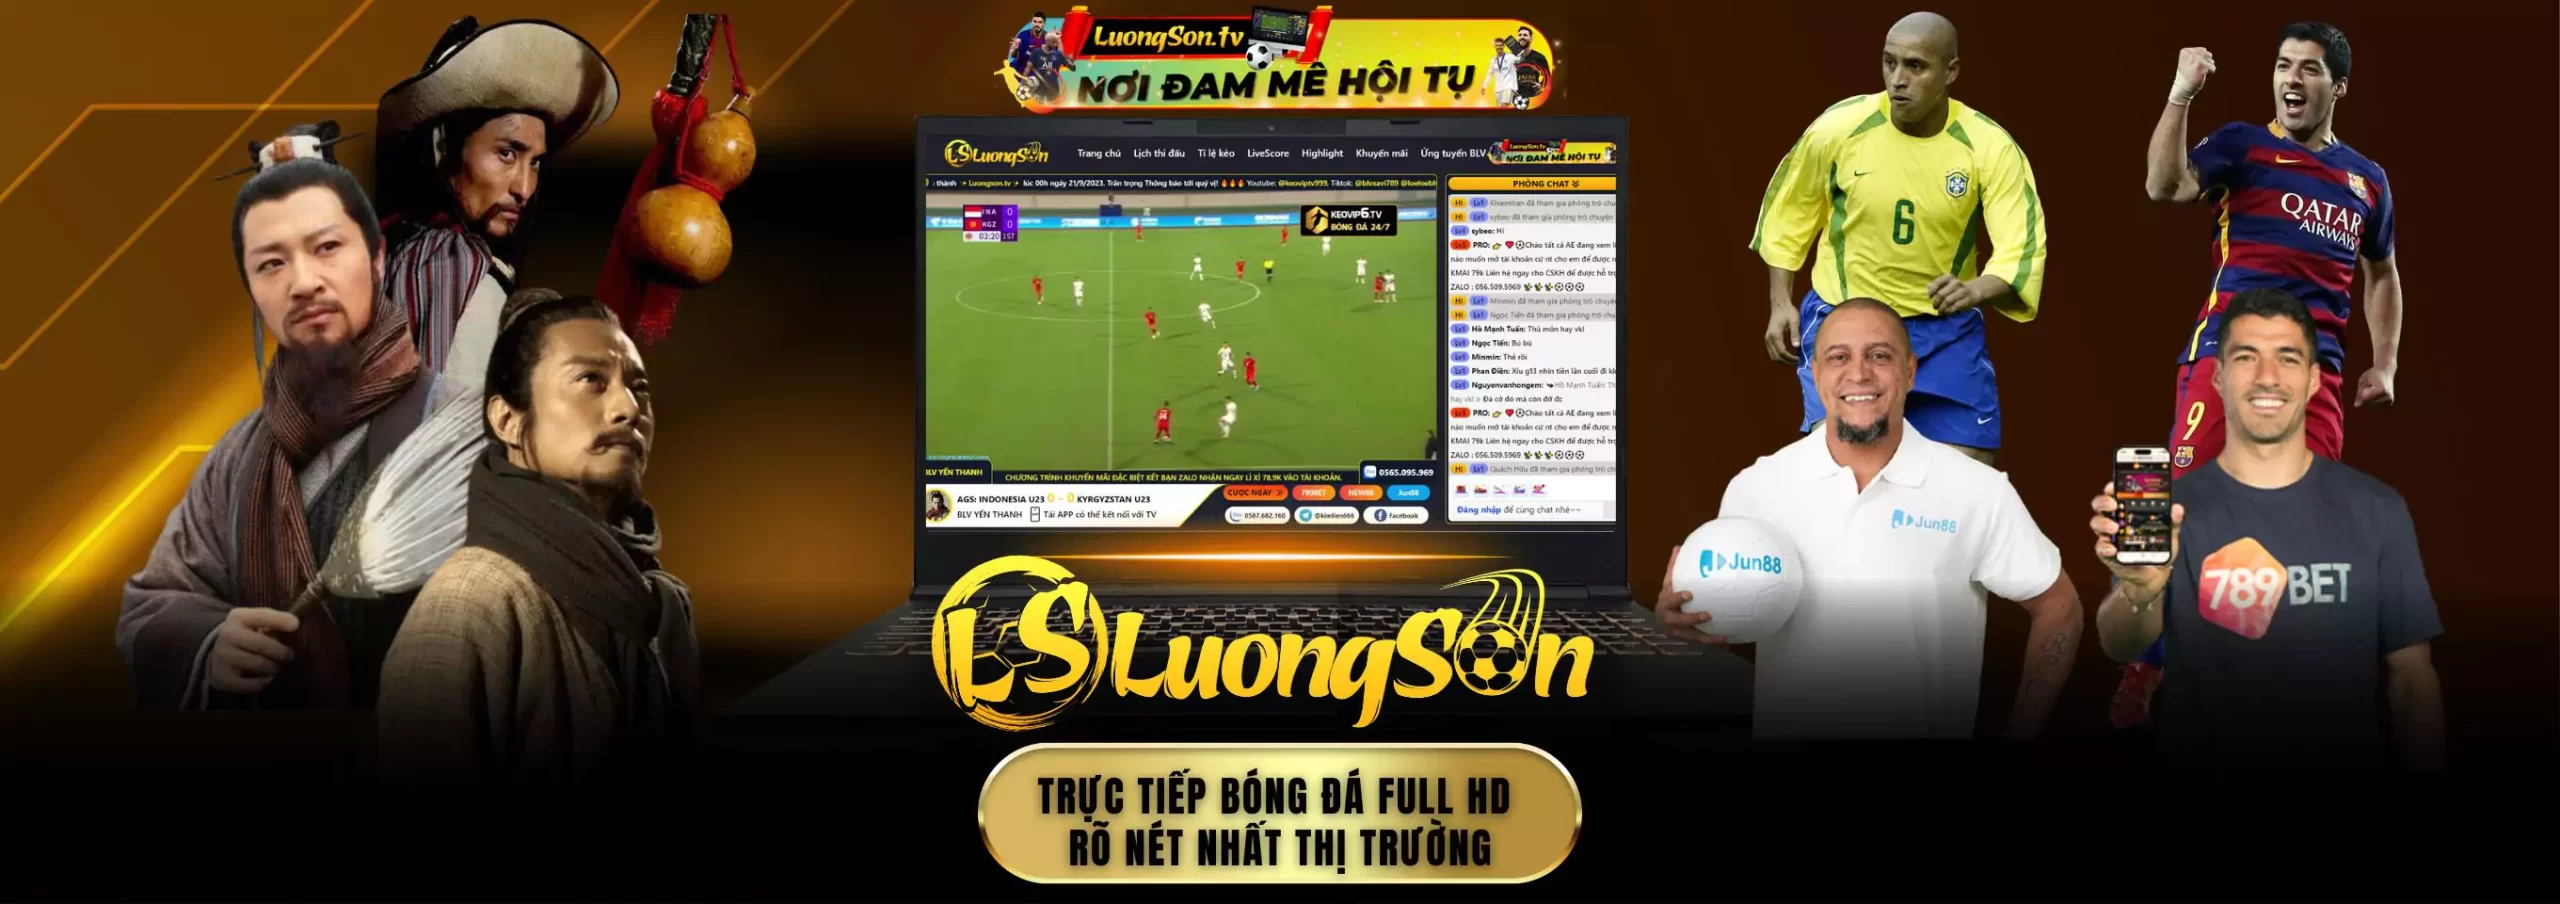 Luongson TV - Trang xem bóng đá trực tuyến thuộc OKVIP